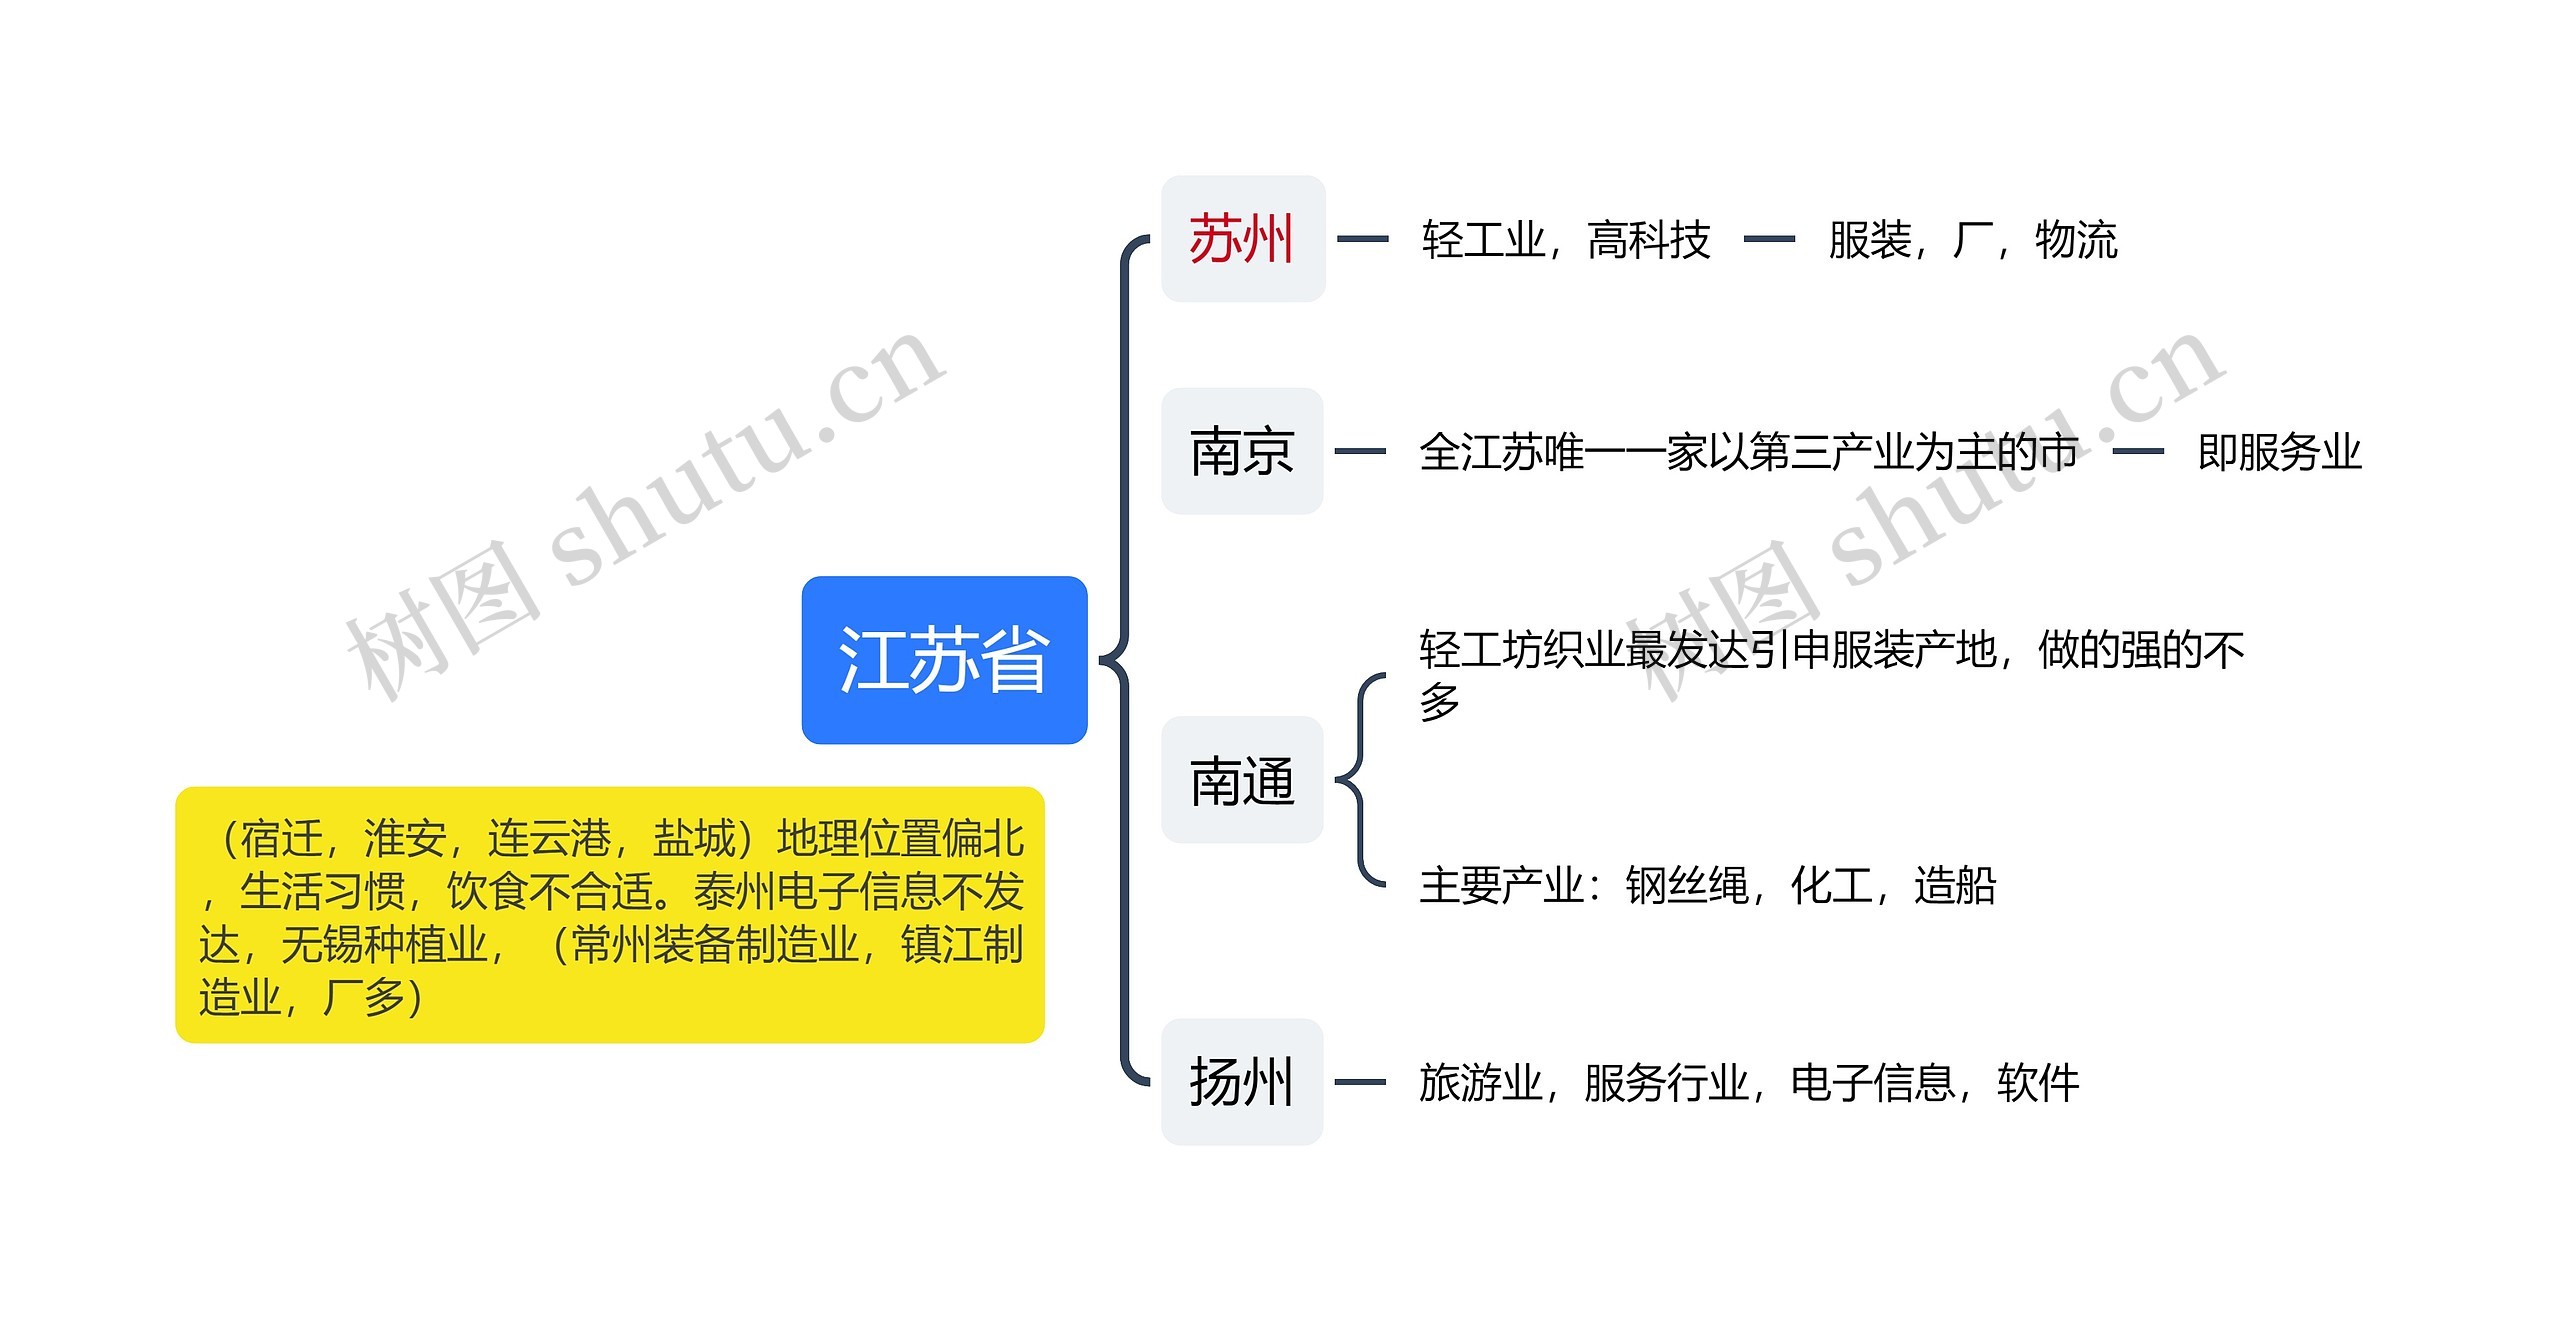 江苏省合适企业发展结构图